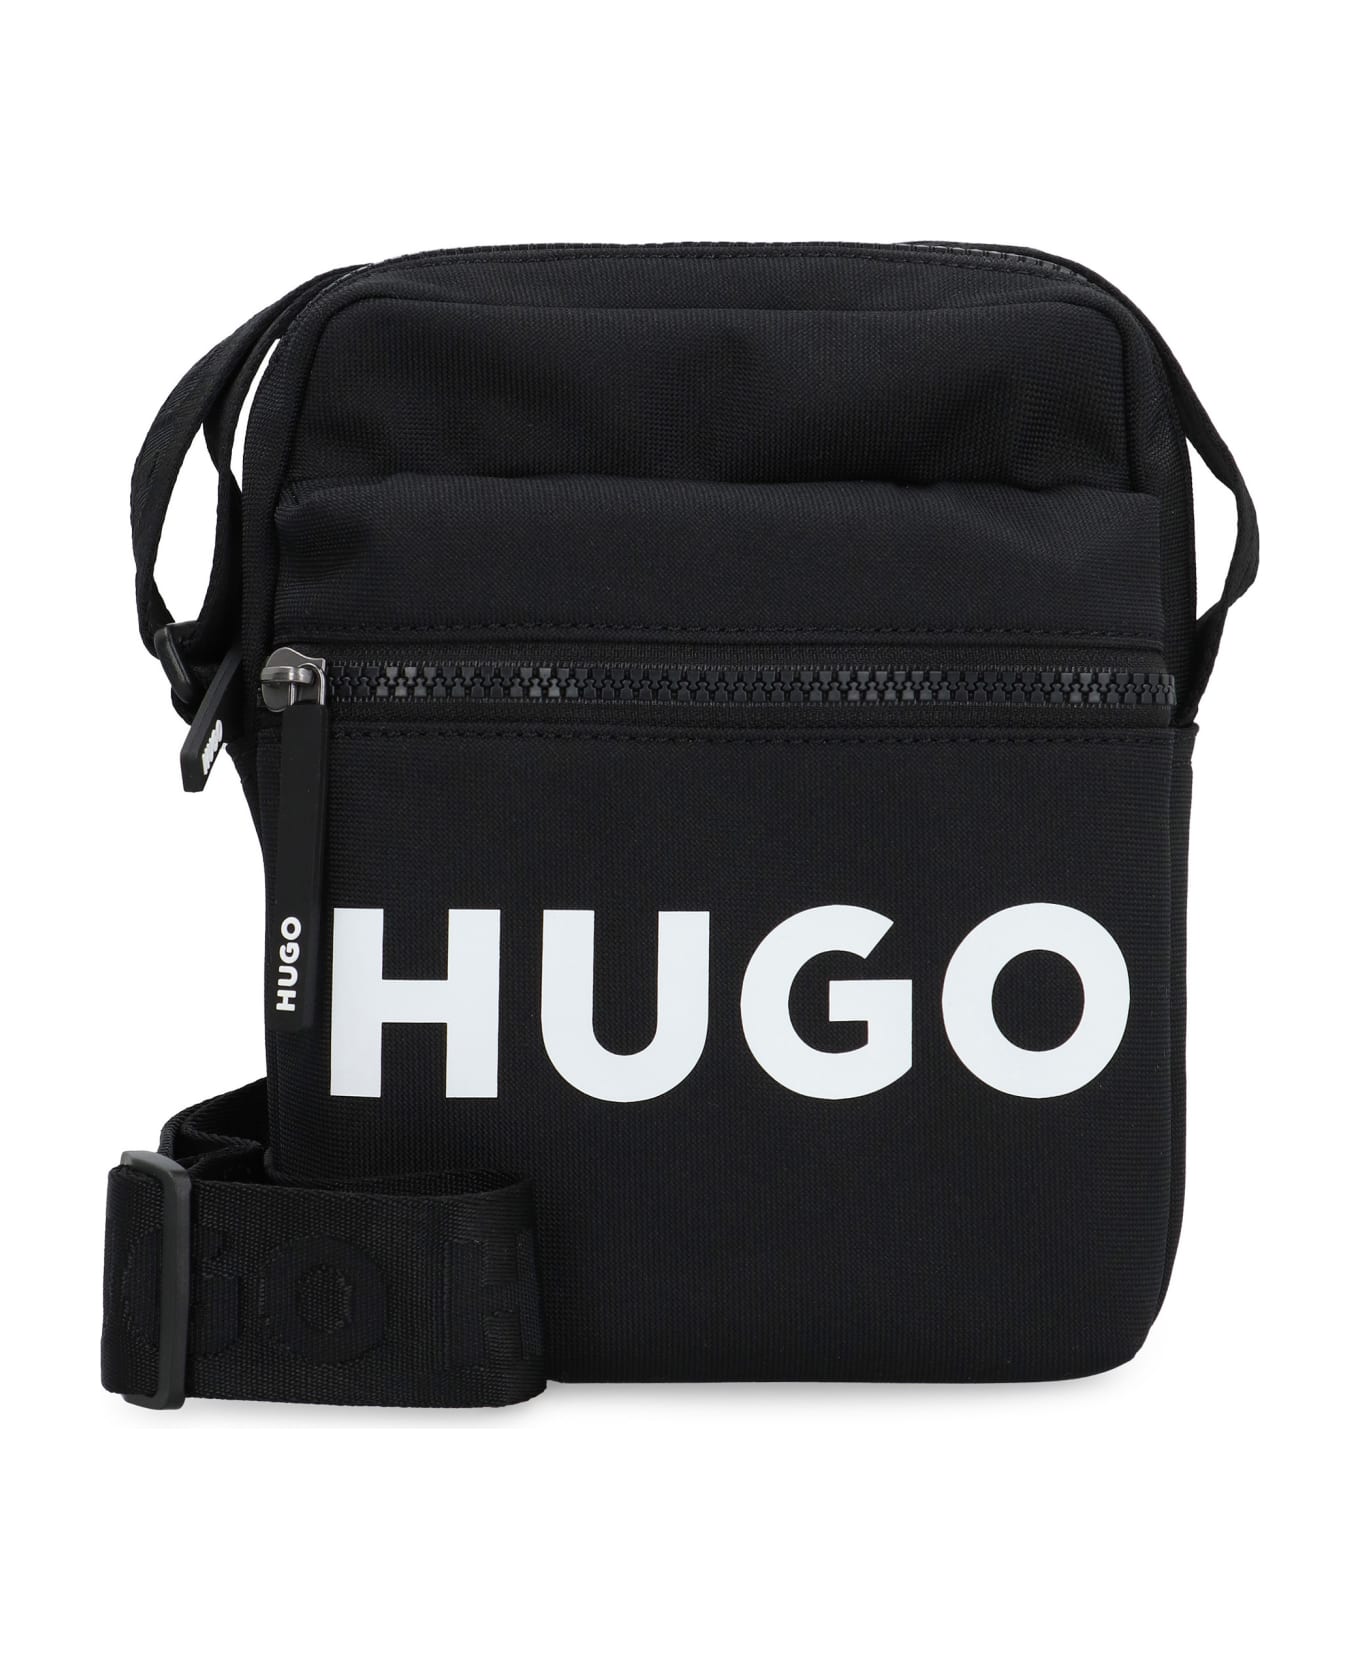 Hugo Boss Ethon 2.0 Nylon Messenger Bag - Black